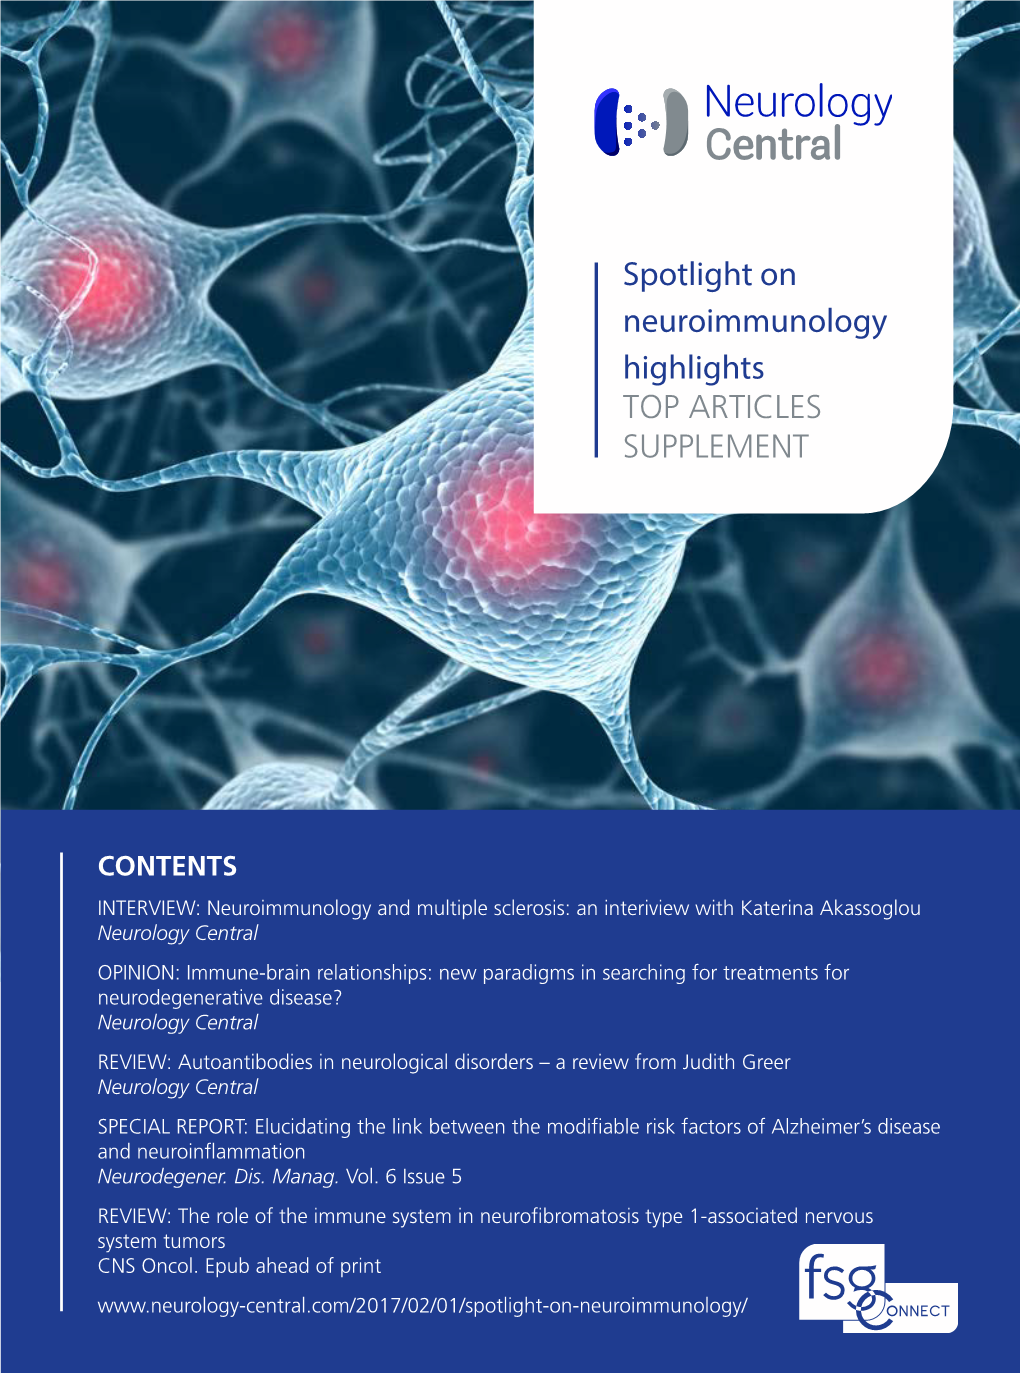 Neurology Spotlighttop ARTICLE on Neuroimmunologysupplements Highlights TOP ARTICLES SUPPLEMENT